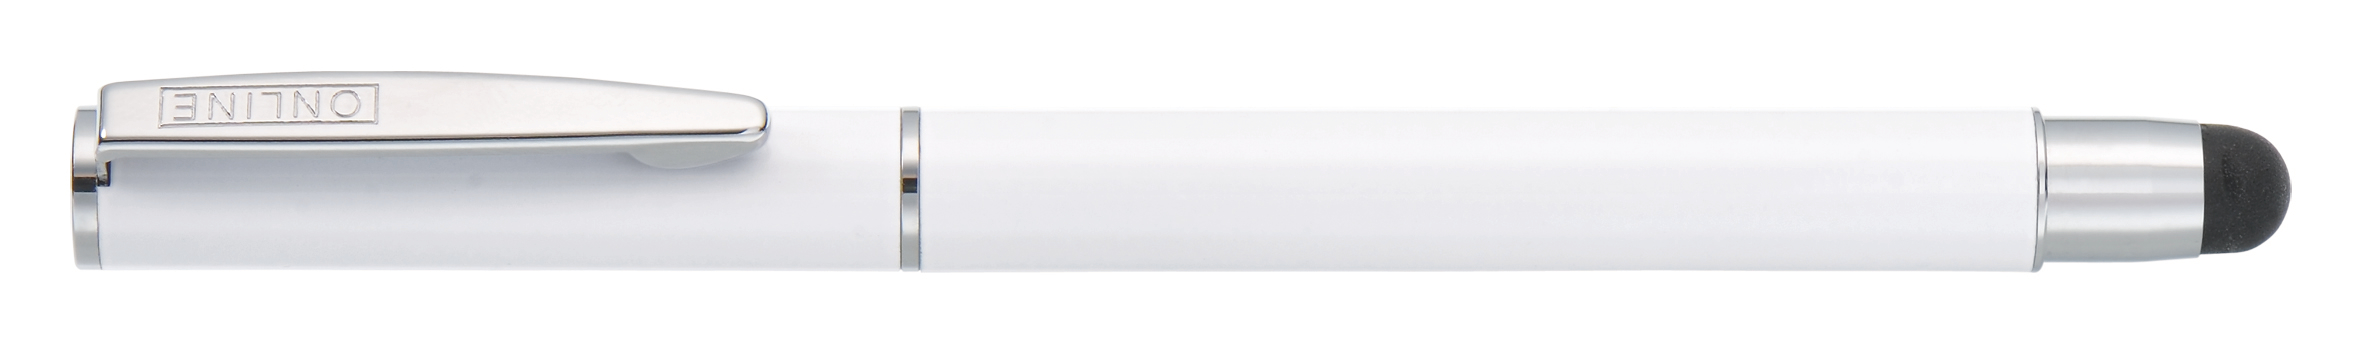 ONLINE Stylo à bille M 31122/3D Stylus Pen Flash Flash White